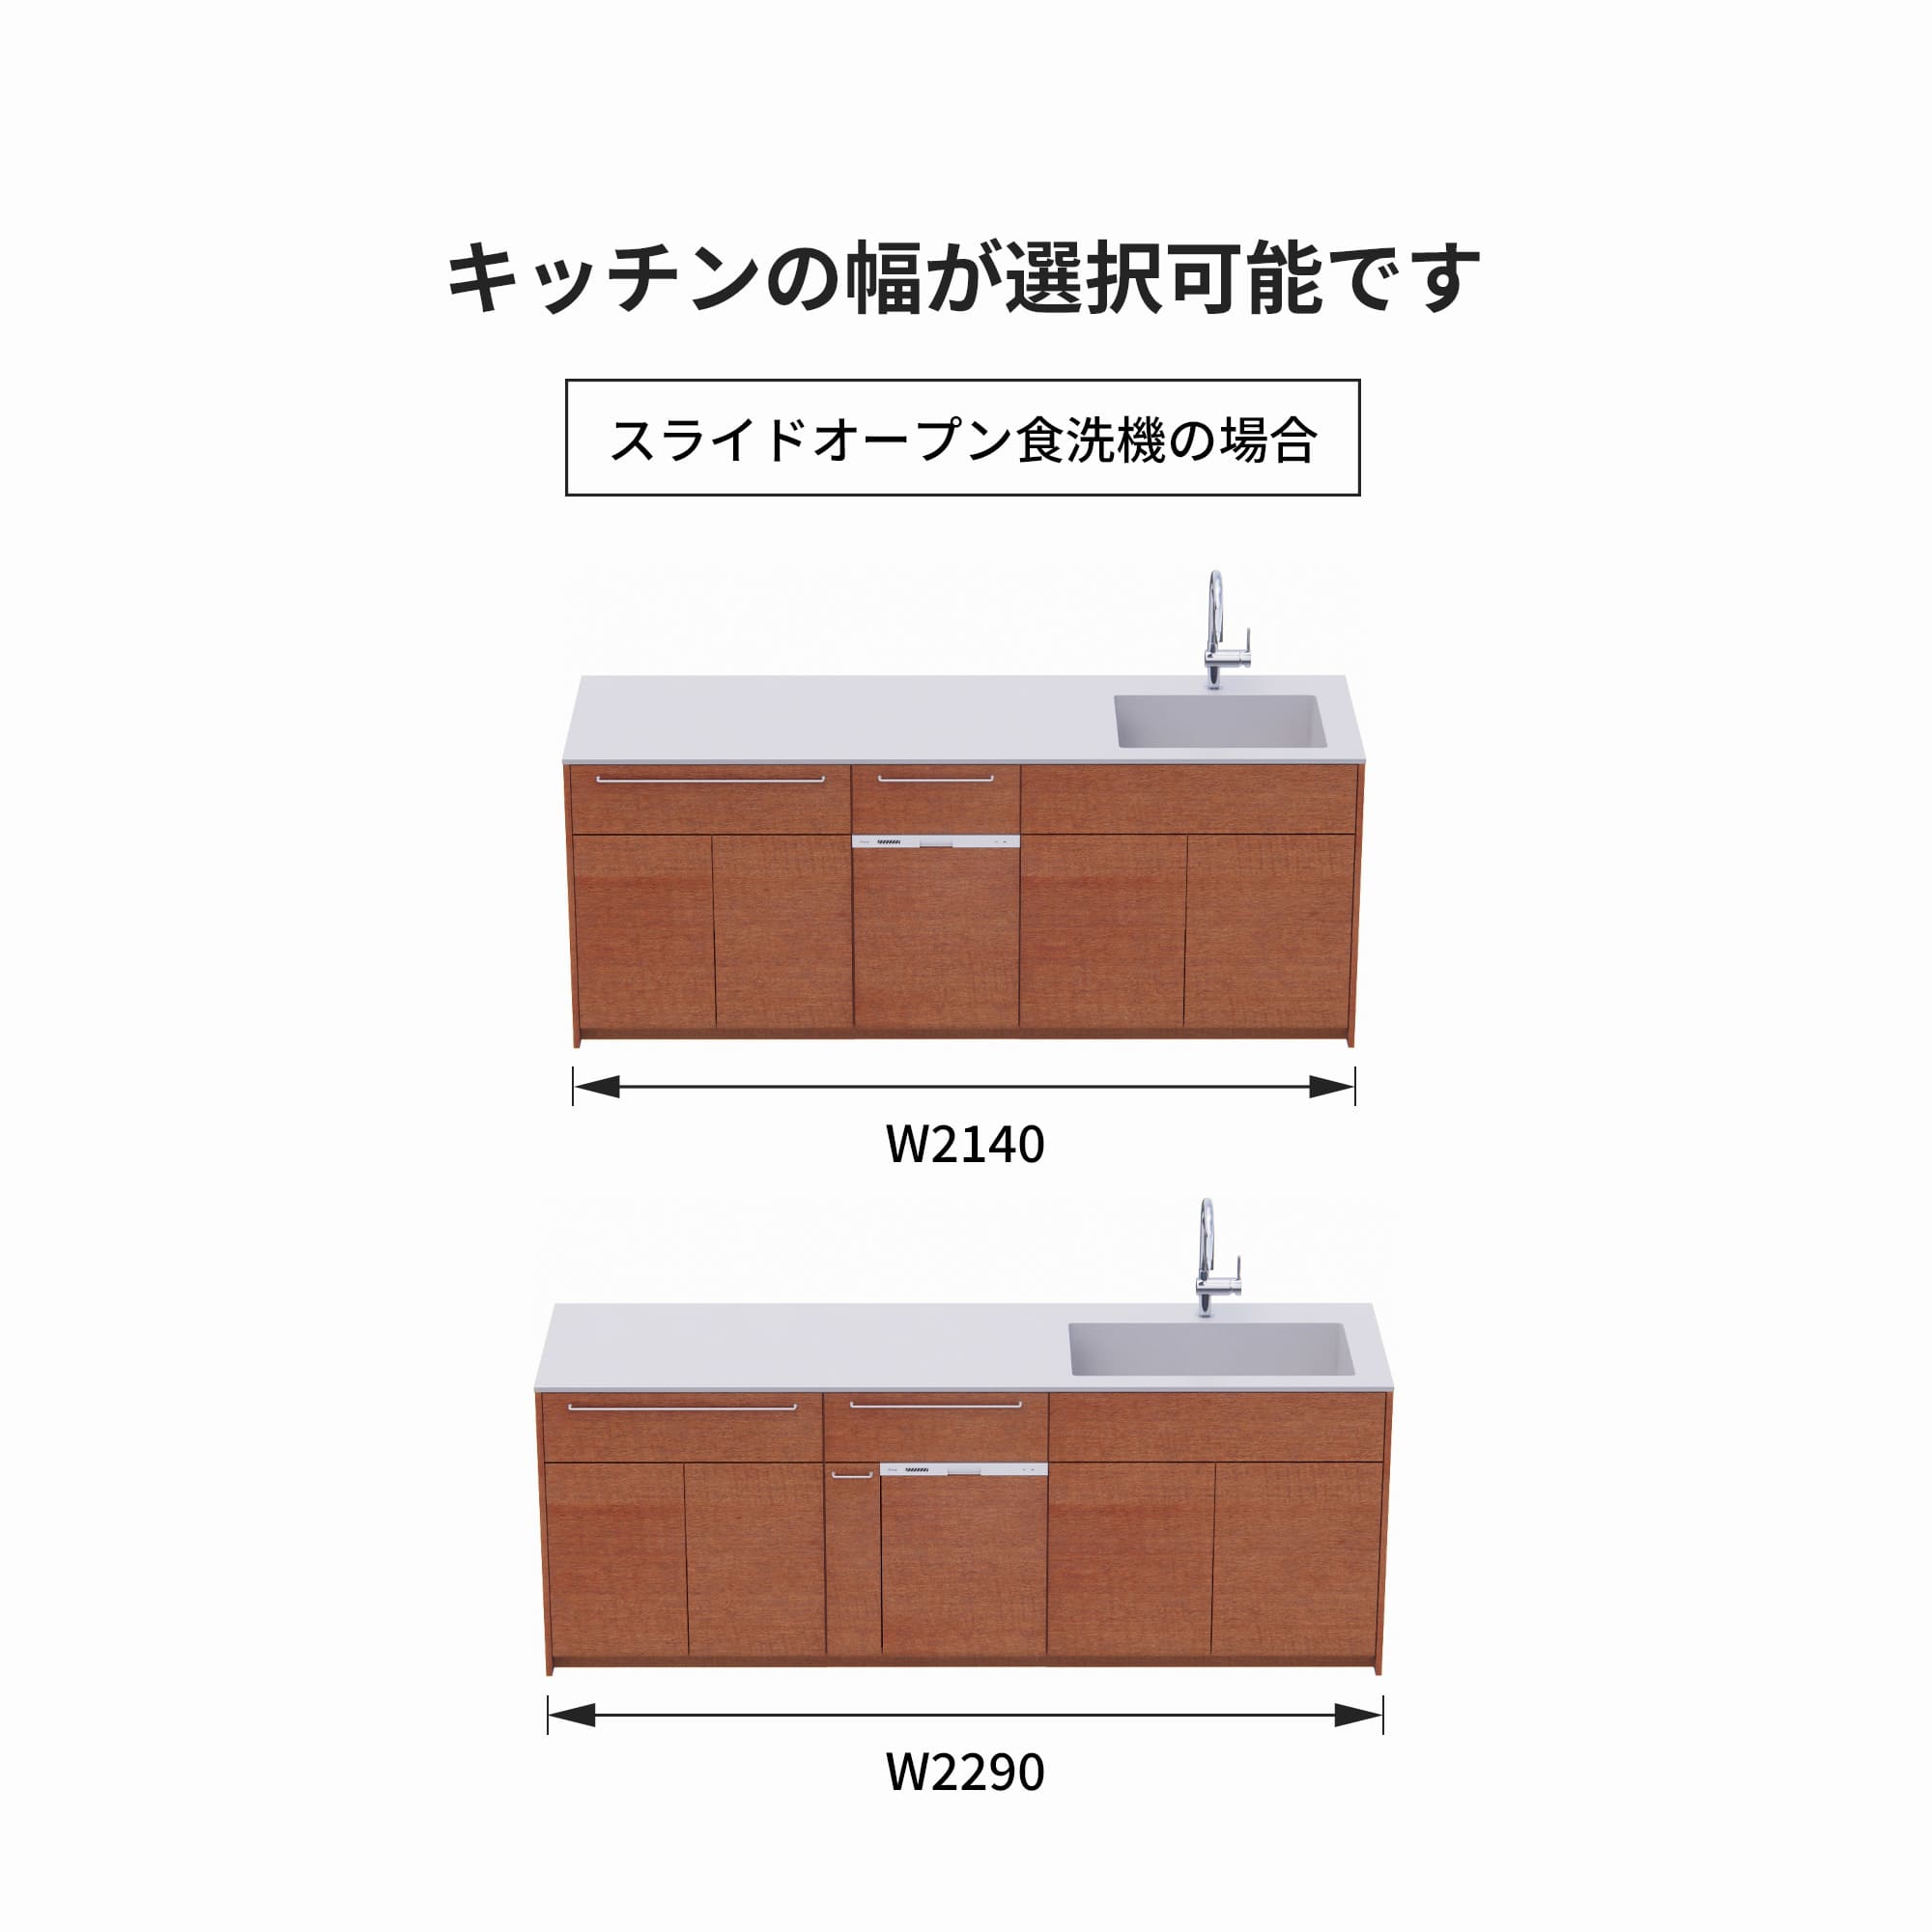 木製システムキッチン 対面型 W2140～2290・コンロなし / オーブンなし / 食洗機あり KB-KC022-39-G183 スライドオープンの場合